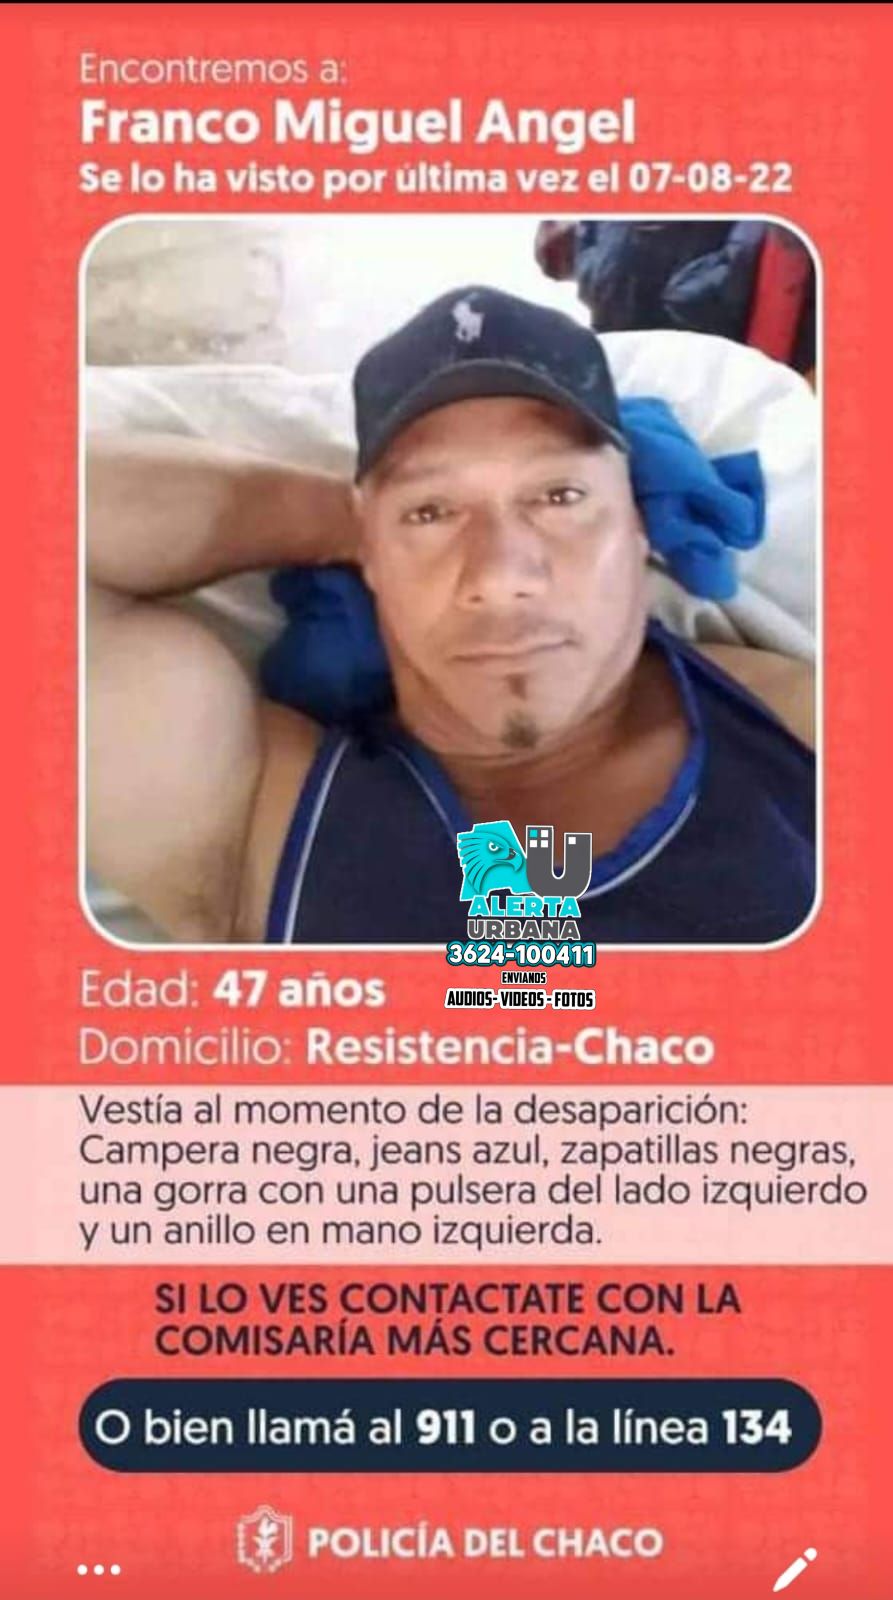 La Policía del Chaco, busca al ciudadano Miguel Ángel Franco 